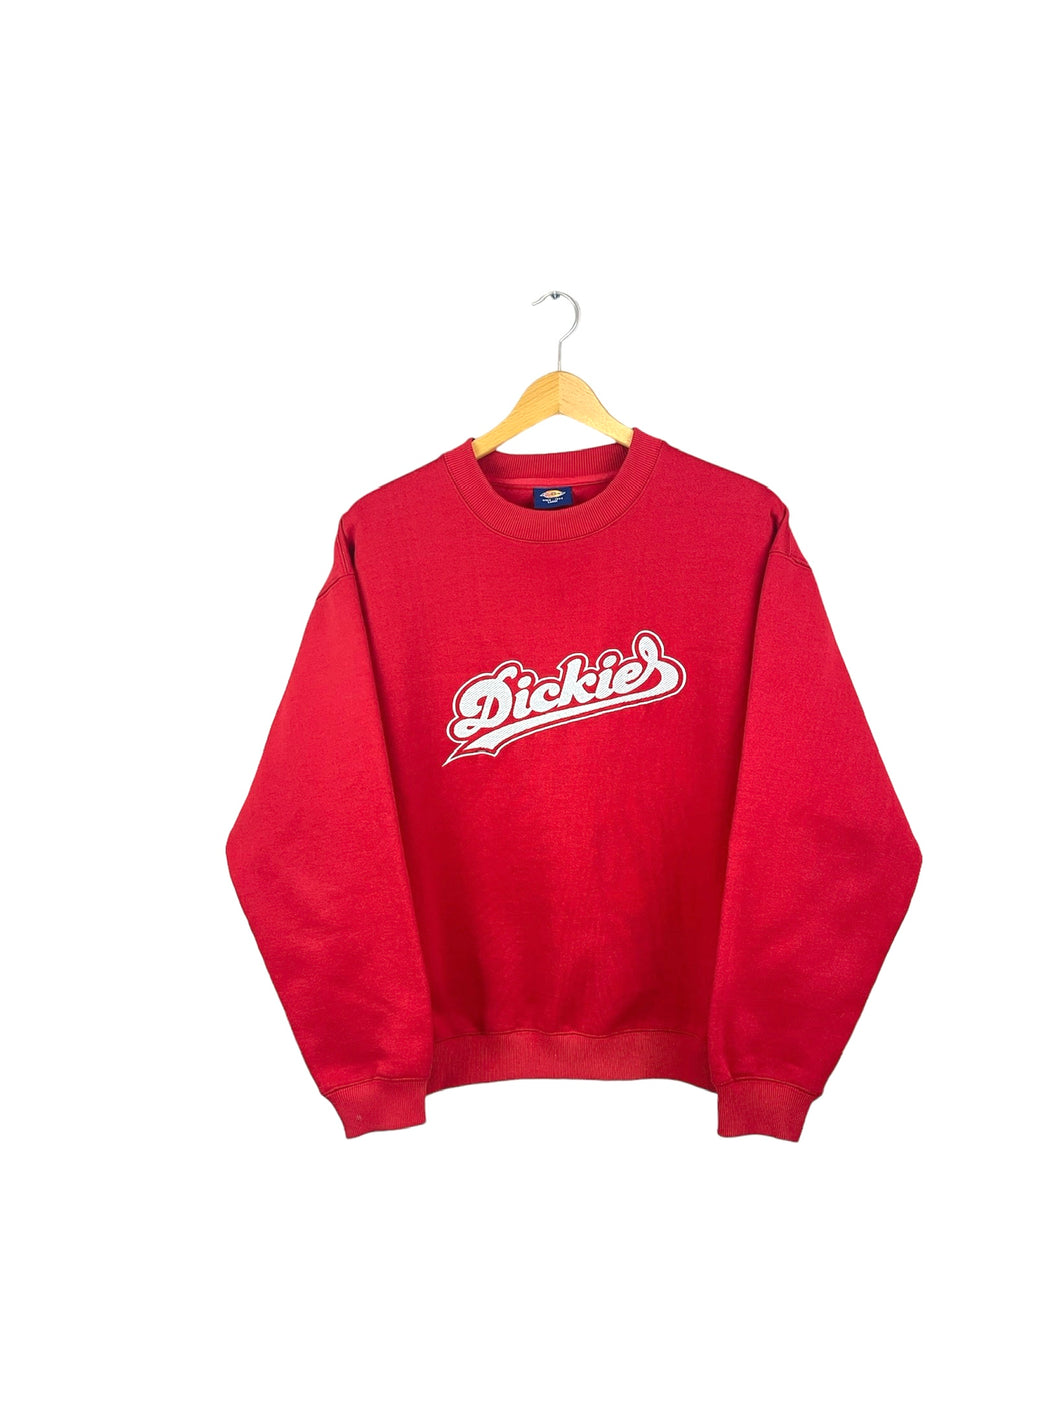 Dickies Sweatshirt - Large